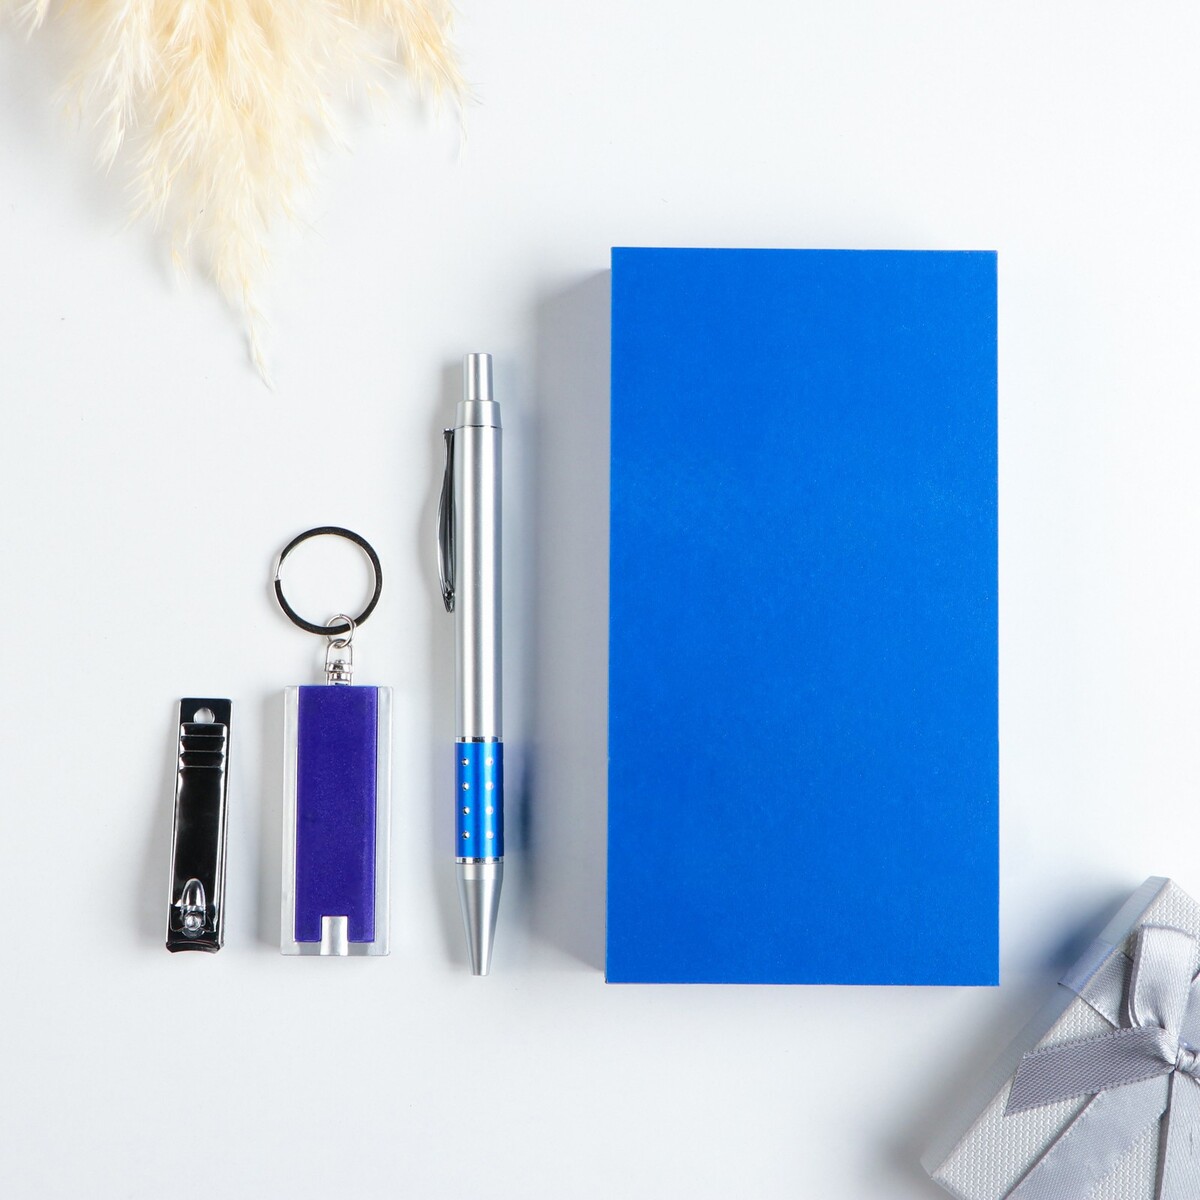 Набор подарочный 3в1 (ручка, кусачки, фонарик синий) набор подарочный 2в1 ручка кусачки